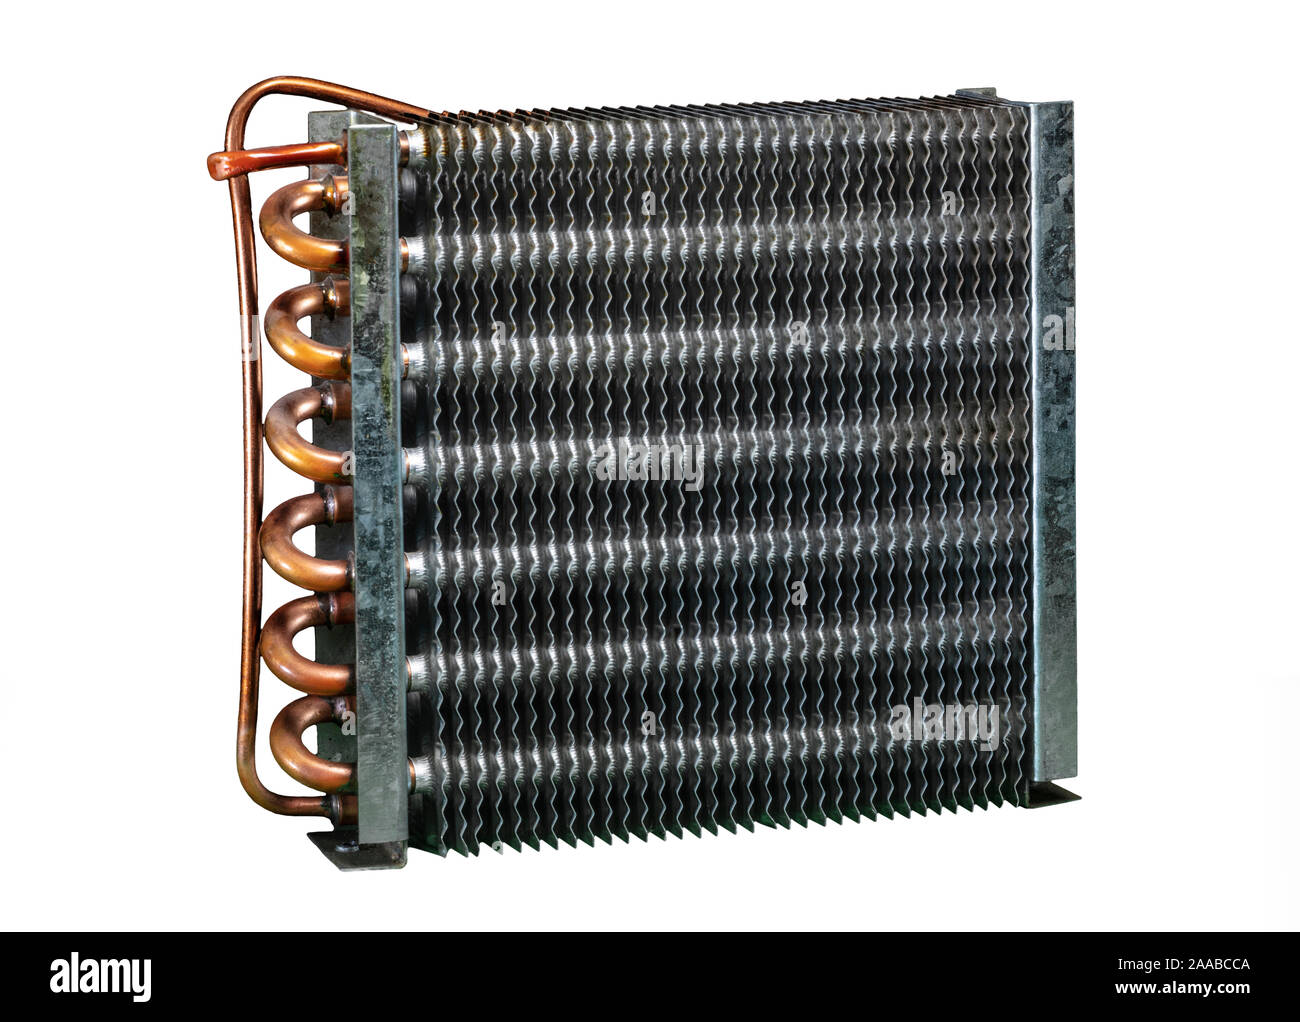 L'unité condenseur compresseur réfrigérateur pour la dissipation de la chaleur Banque D'Images